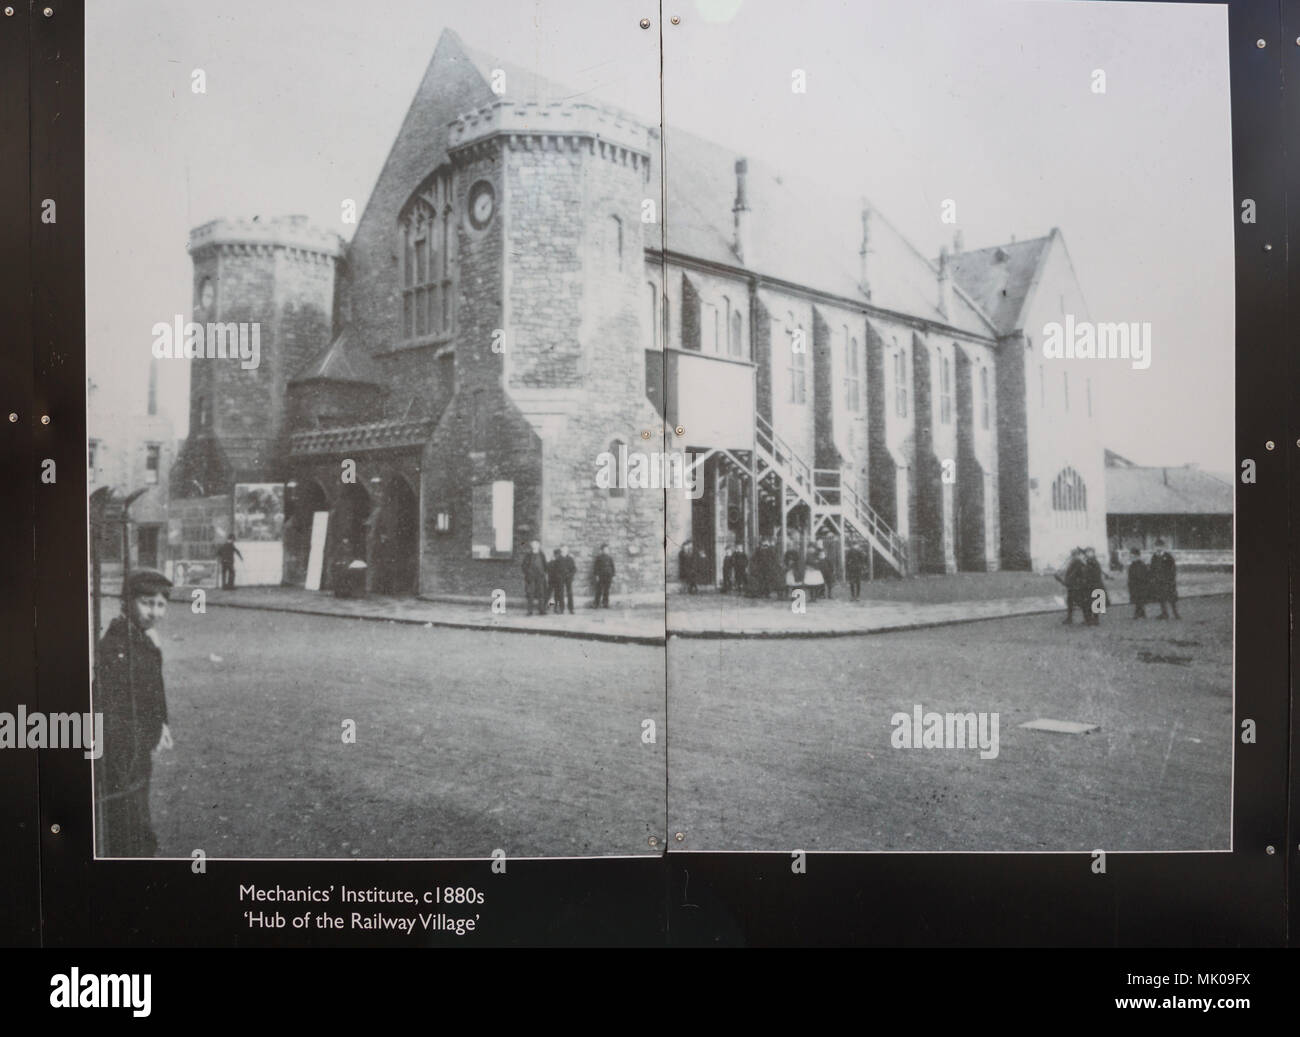 Public display del vecchio e storico immagini sulle opere di GWR, Swindon, Wiltshire, Inghilterra, Regno Unito esterno della meccanica' Istituto 1880 Foto Stock